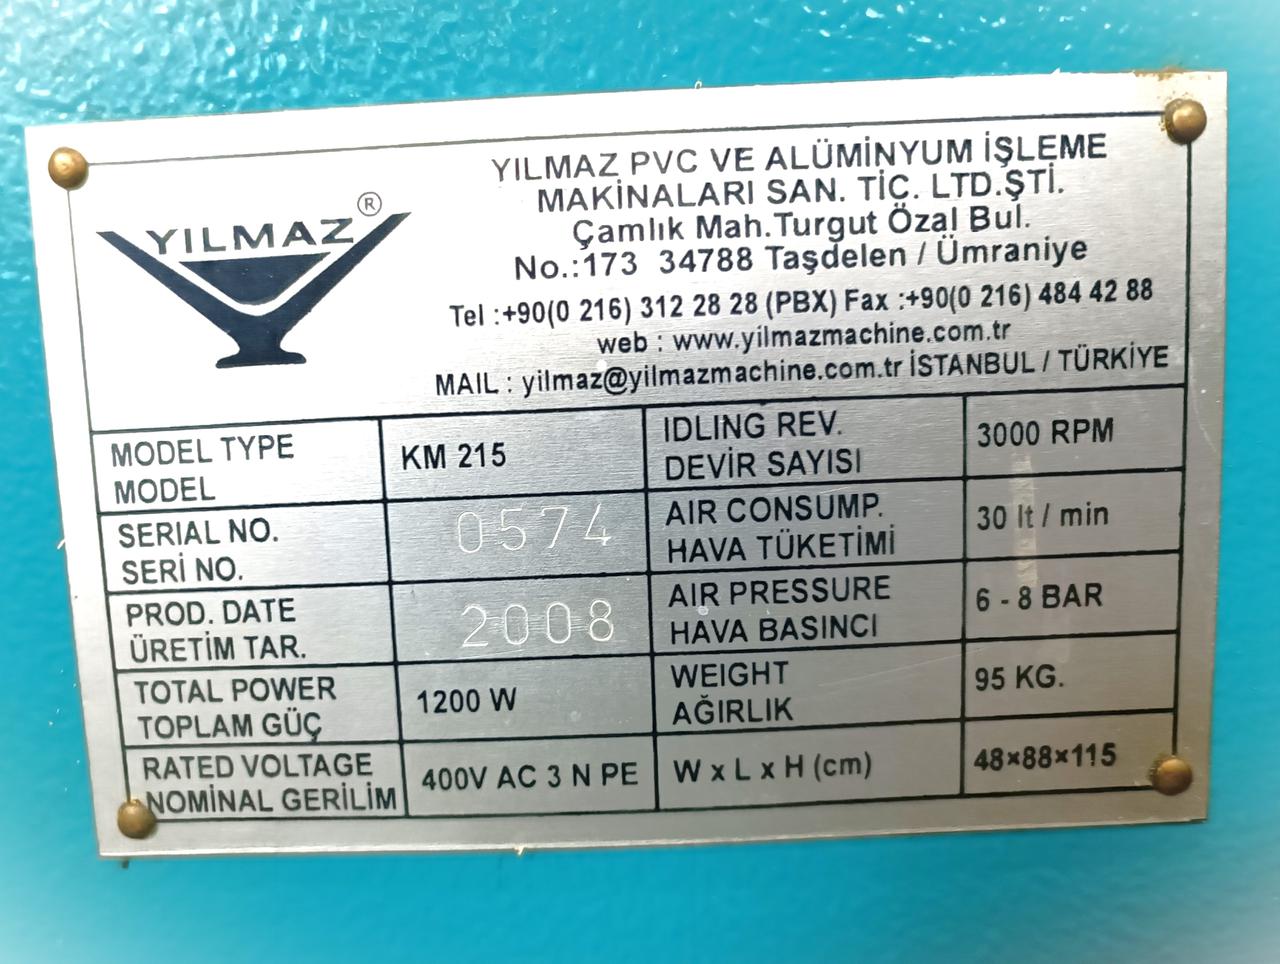 YILMAZ KM 215 Станок для фрезерования торцов импоста с автоматической подачей фрезы (Б/У оборудование)